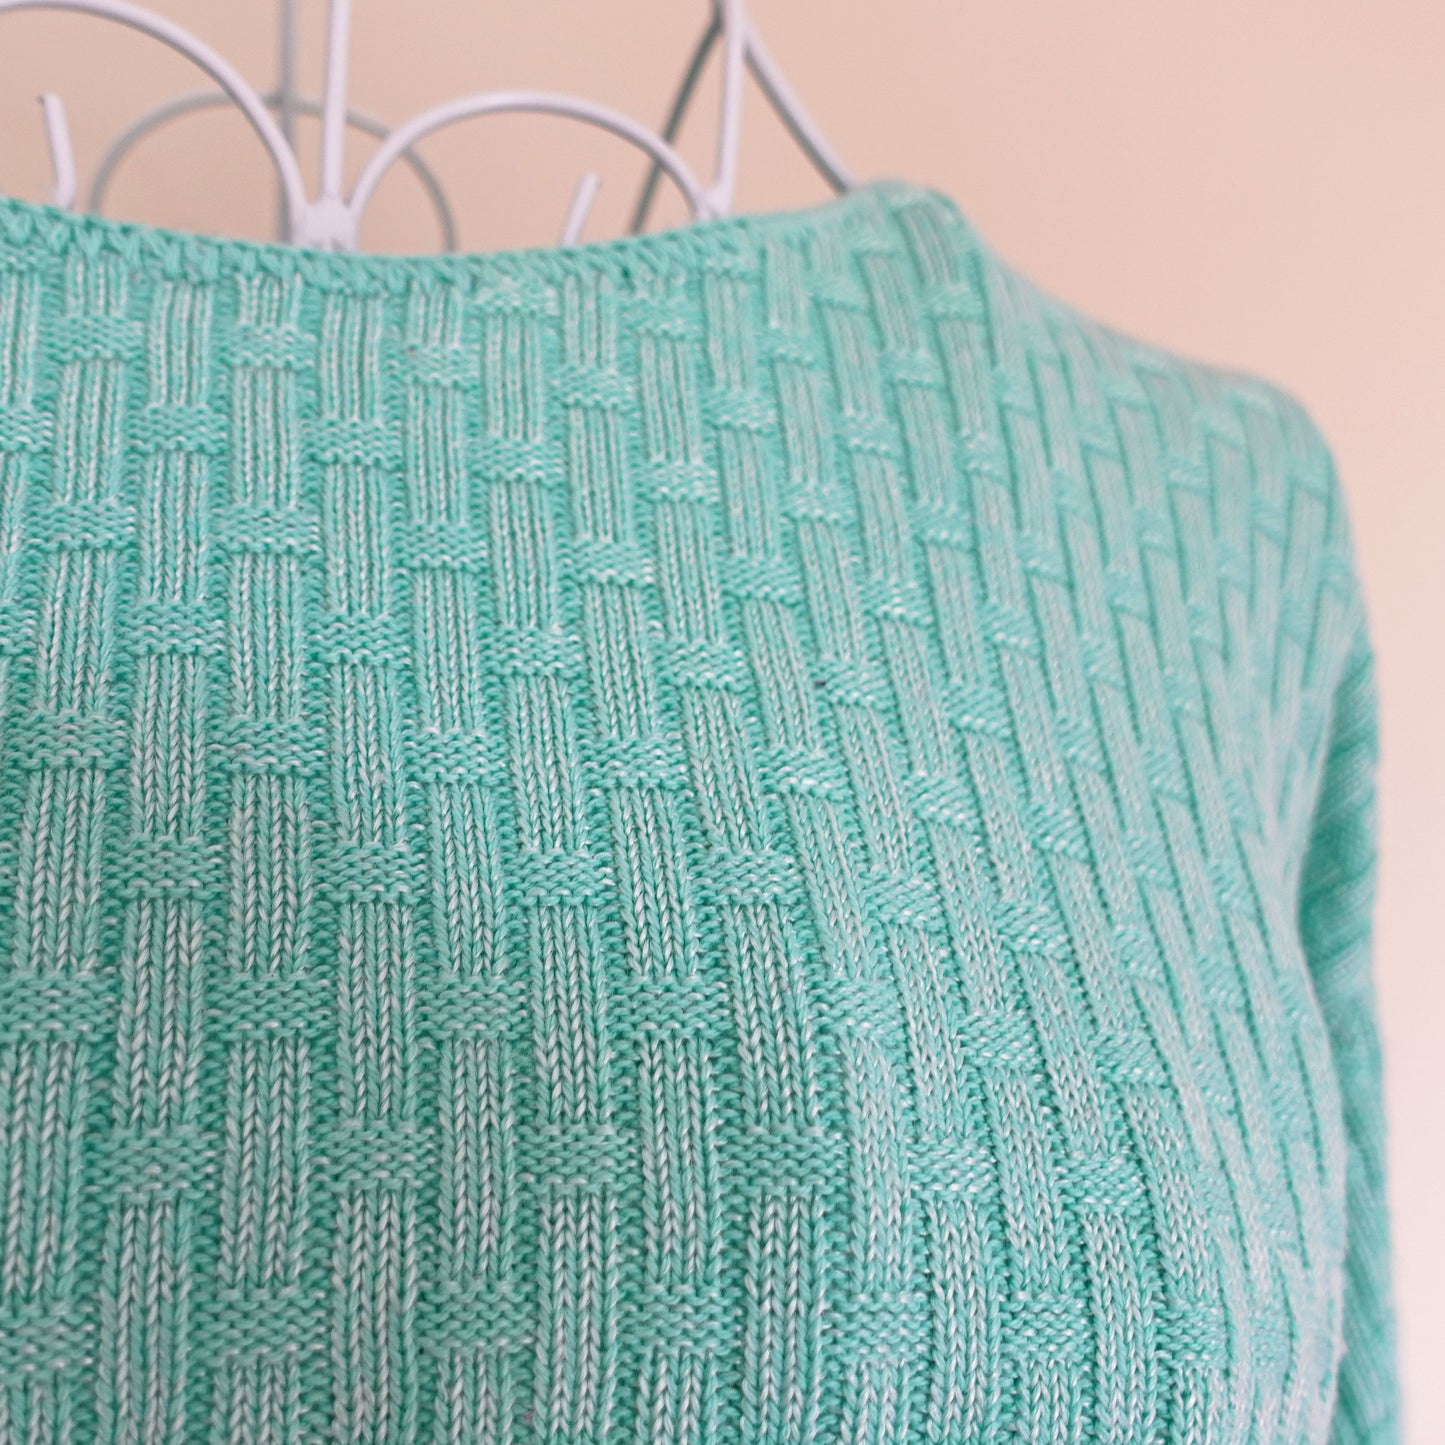 mint short sleeve basket weave sweater